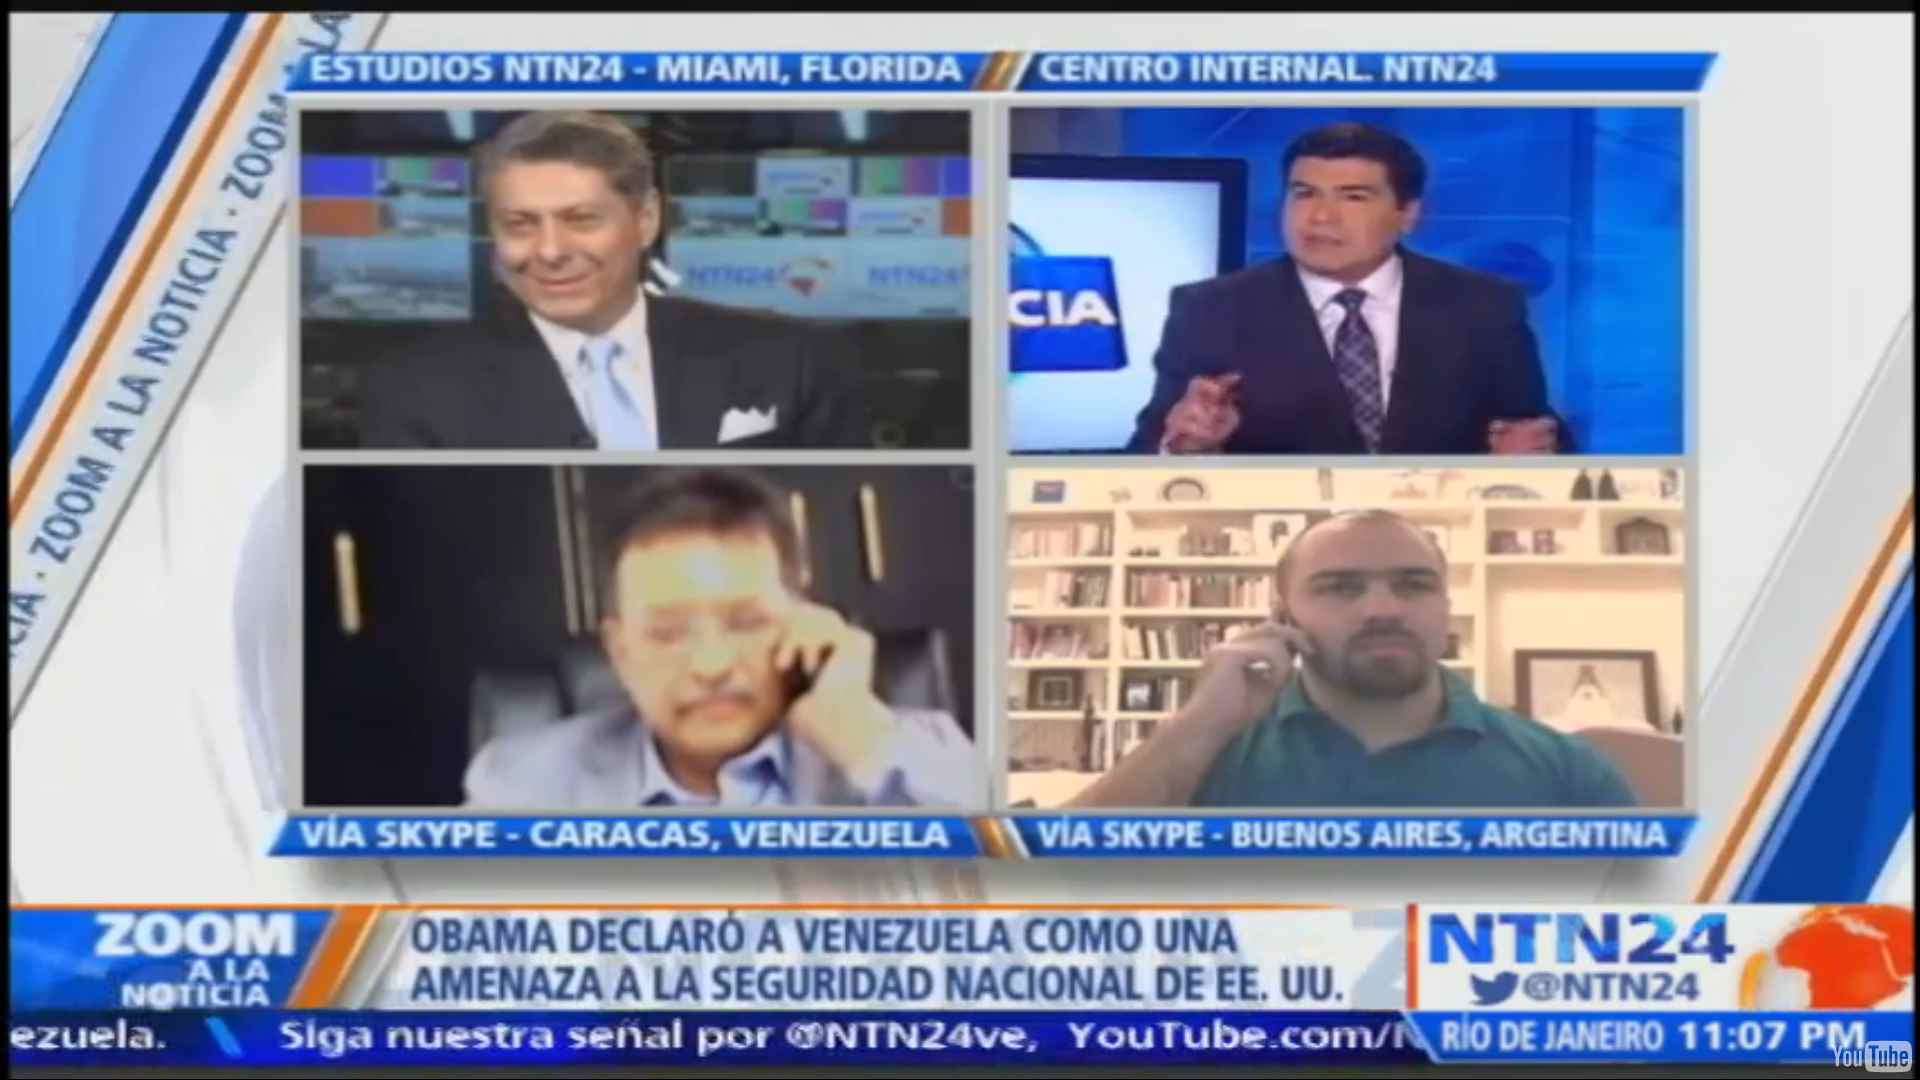 Andrei Serbin Pont, Coordinador de Investigaciones de CRIES, participó en Zoom a la Noticia de NTN24 para hablar sobre Venezuela